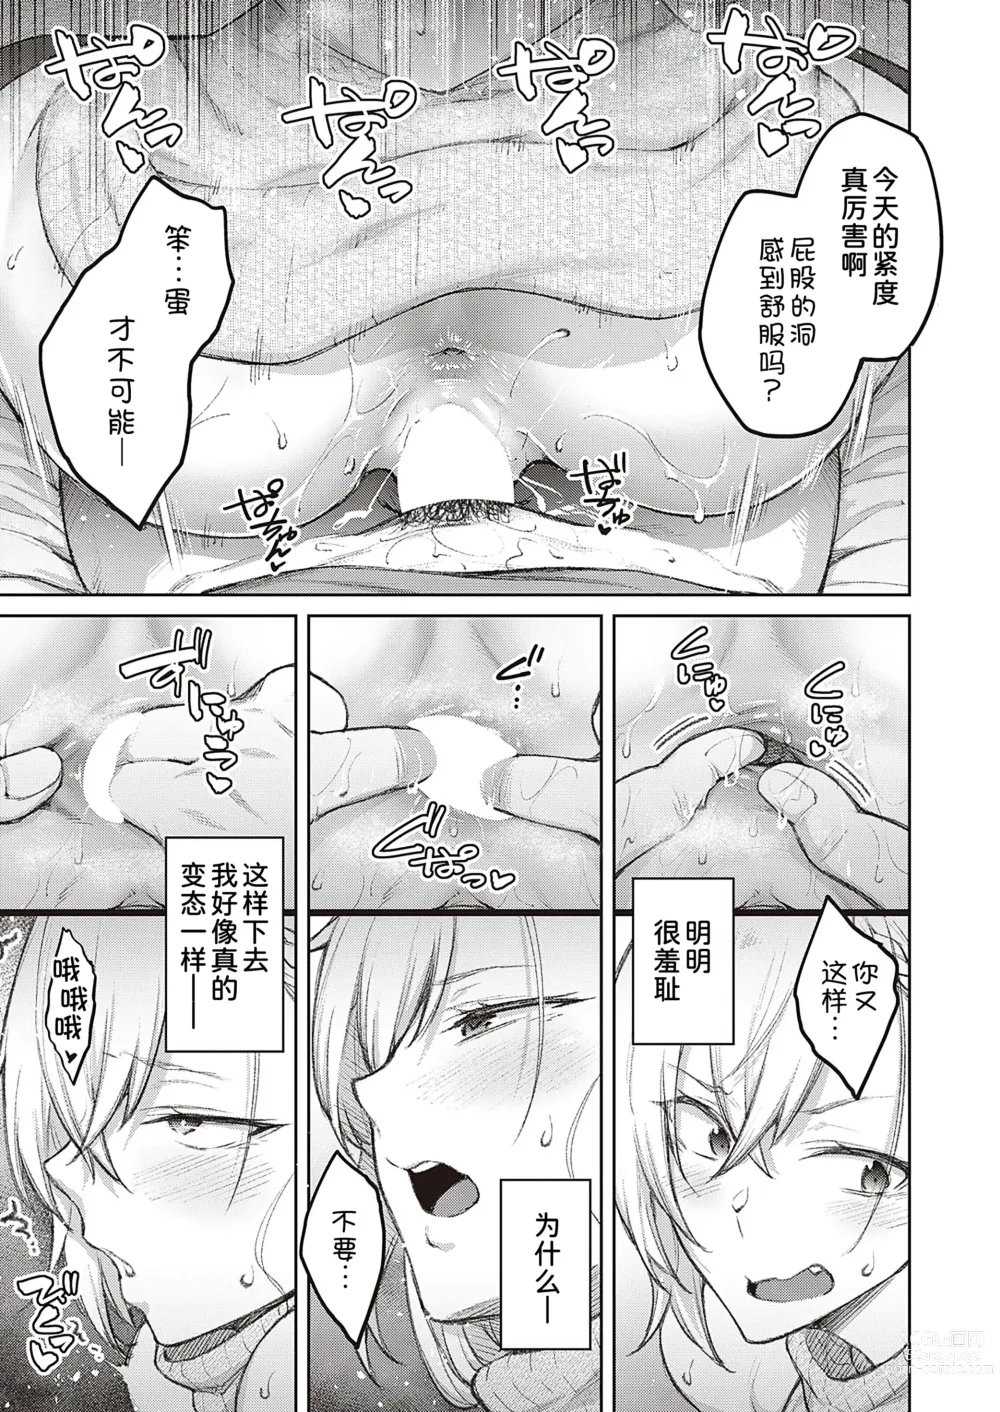 Page 18 of manga Tsugi wa Kou wa Ikanai kara na!2